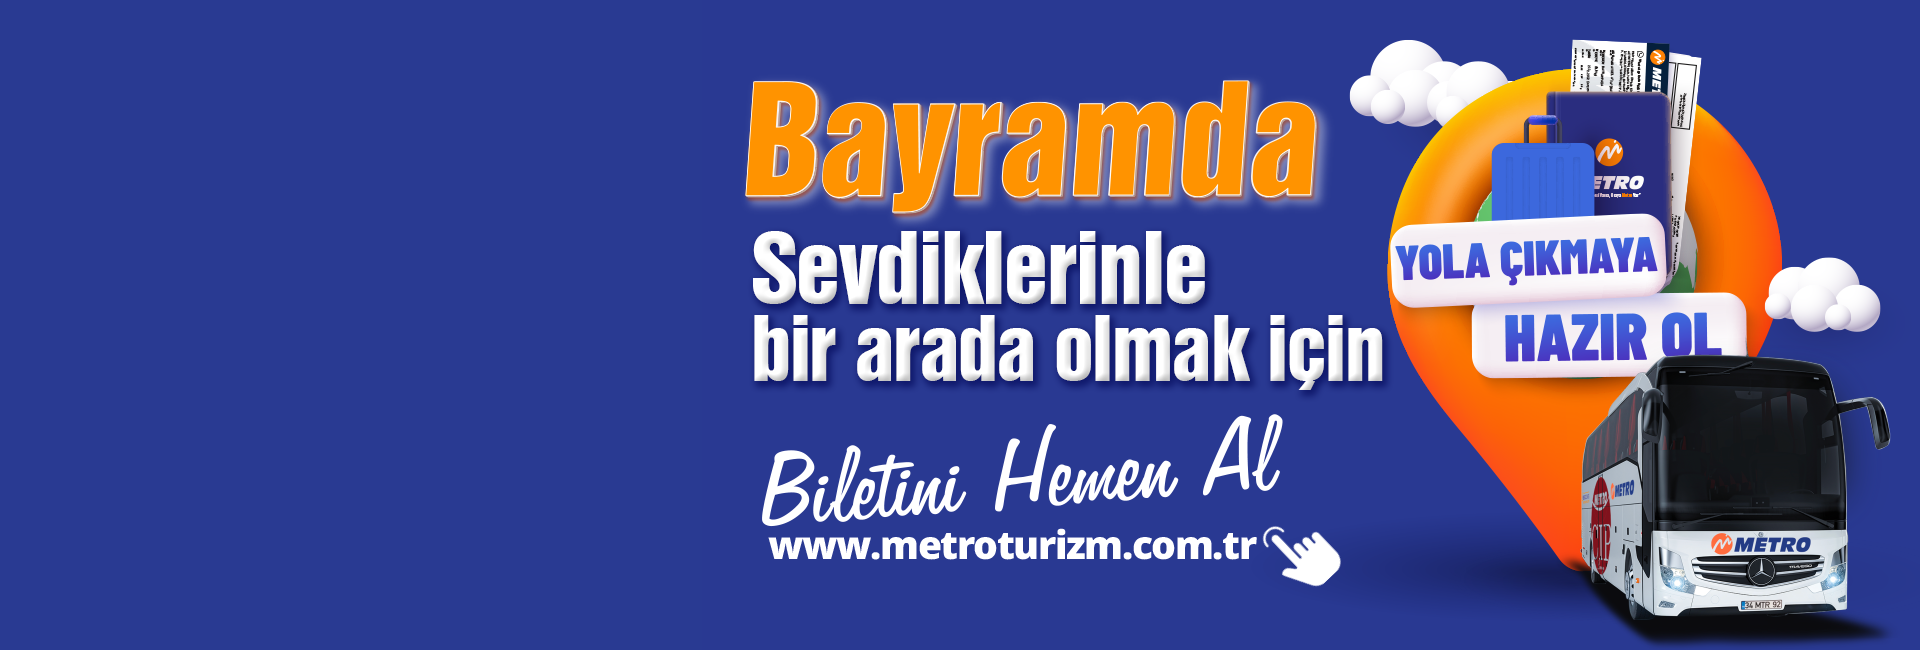 bayram